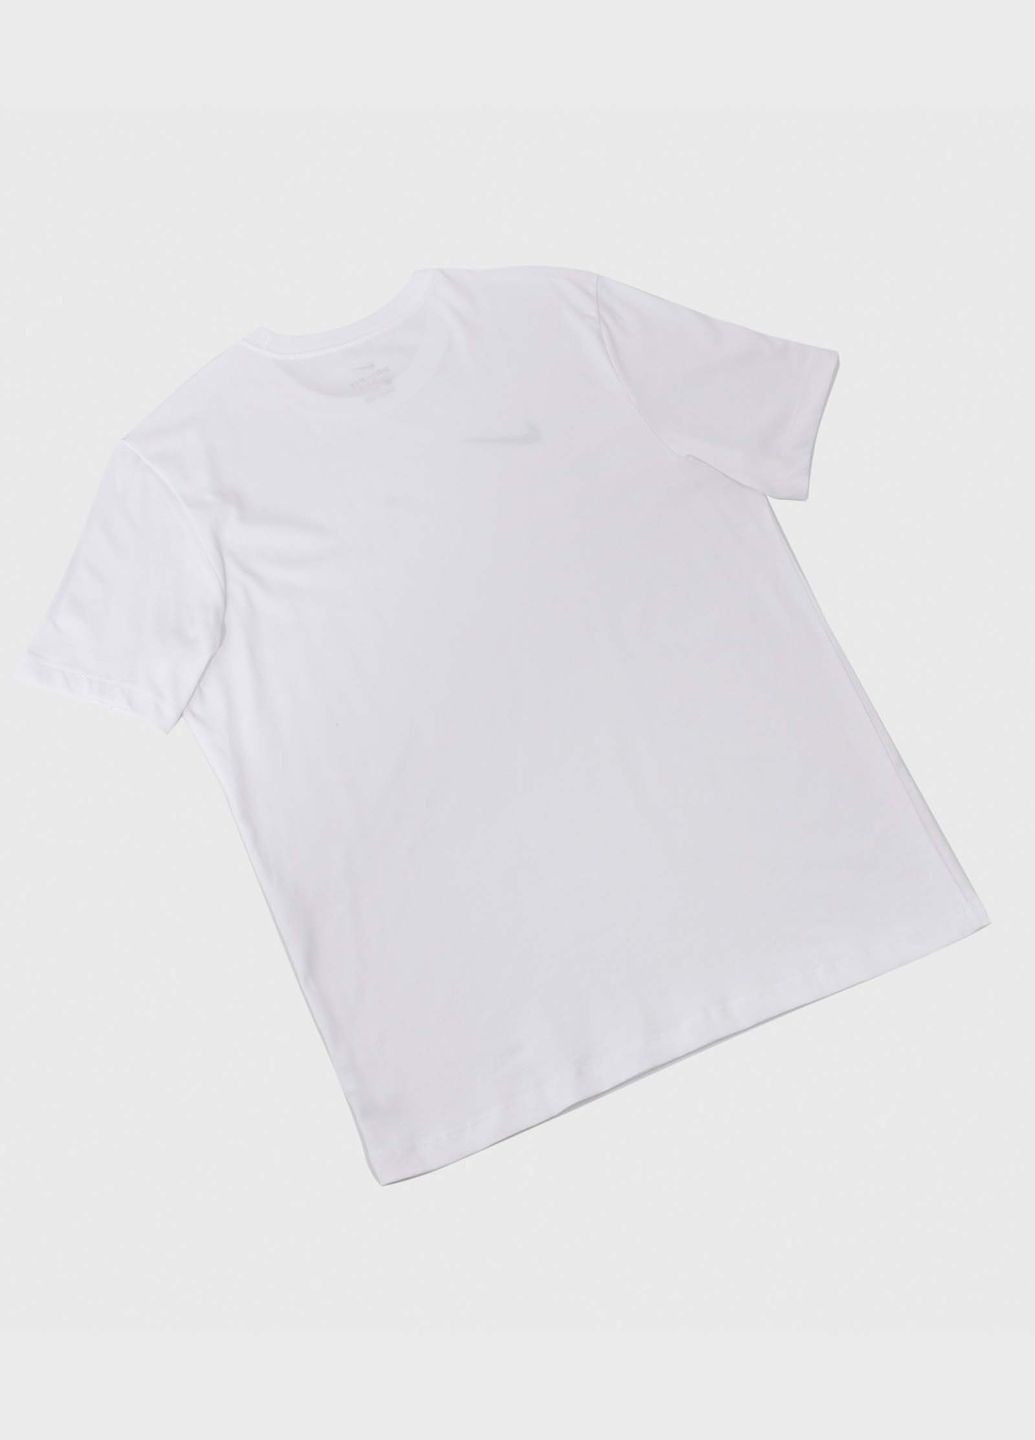 Белая футболка мужская dri-fit park 20 cw6952-100 белая Nike